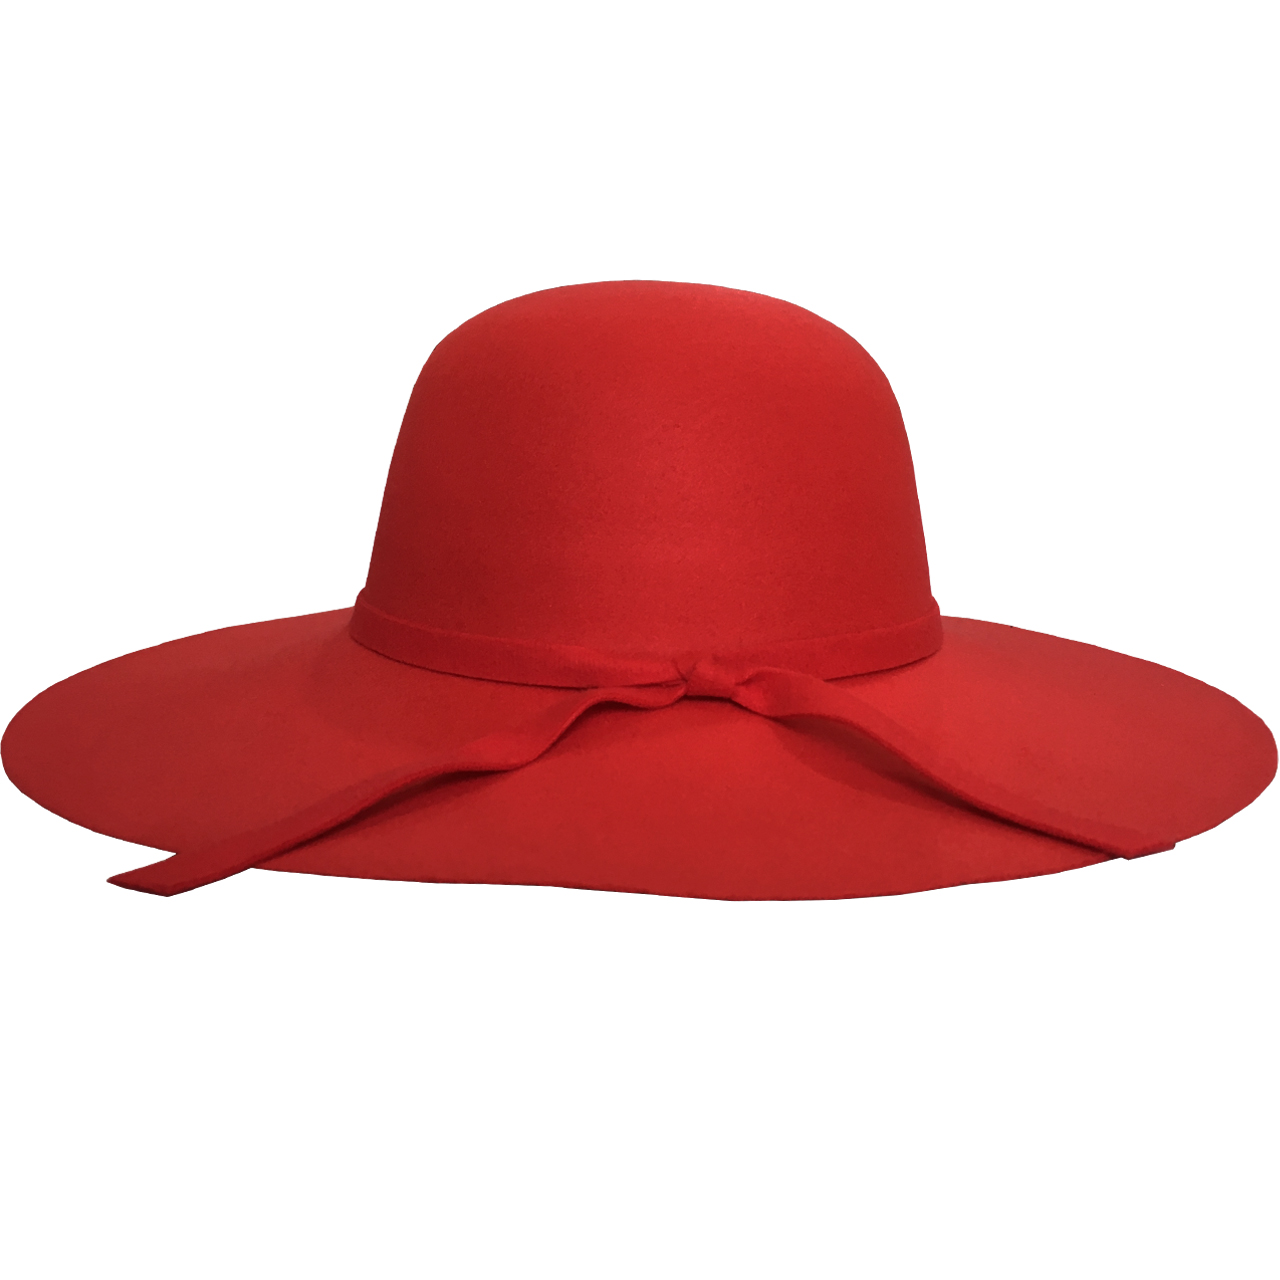 کلاه دخترانه مدل شهرزاد رنگ قرمز